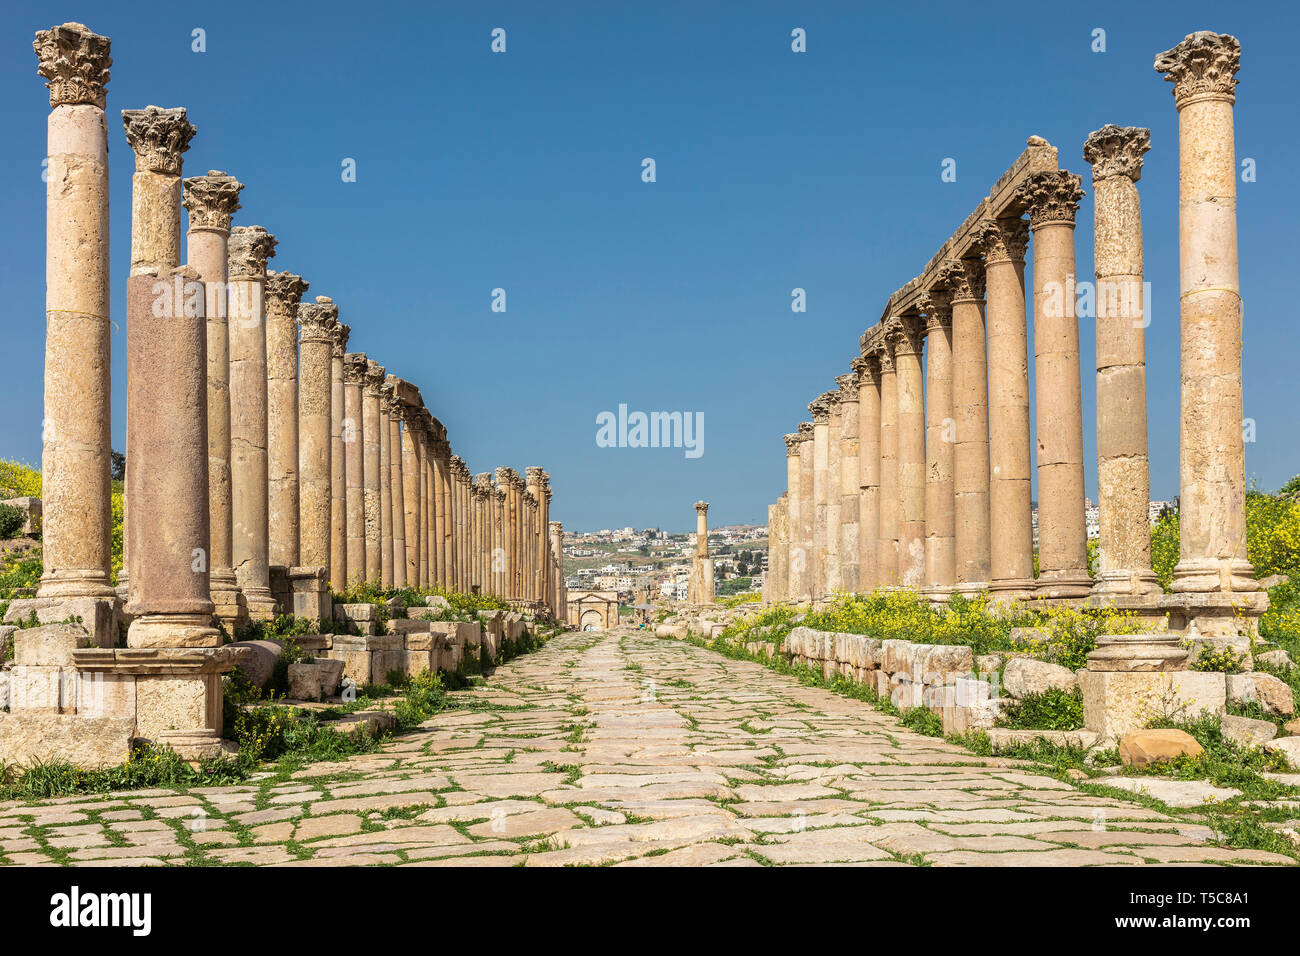 Amman, Jordanie. détail des colonnes romaines à l'intérieur de la citadelle, site archéologique connu de destination touristique. Banque D'Images